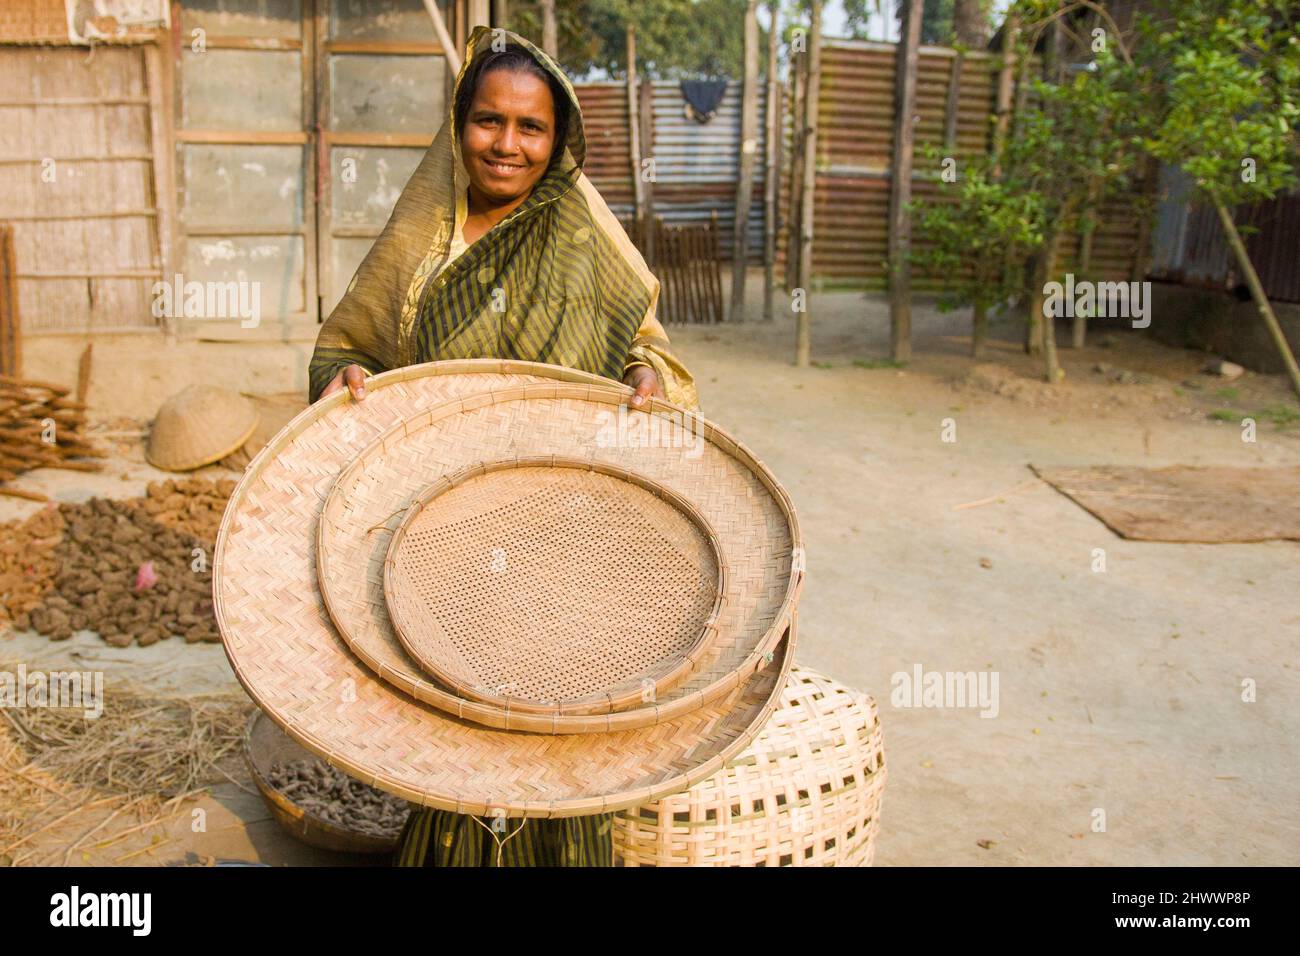 Una empresaria está mostrando su cesta hecha con Bambú en el distrito de Netrkona de Bangladesh. También está ayudando a otras mujeres a ganar dinero. Foto de stock